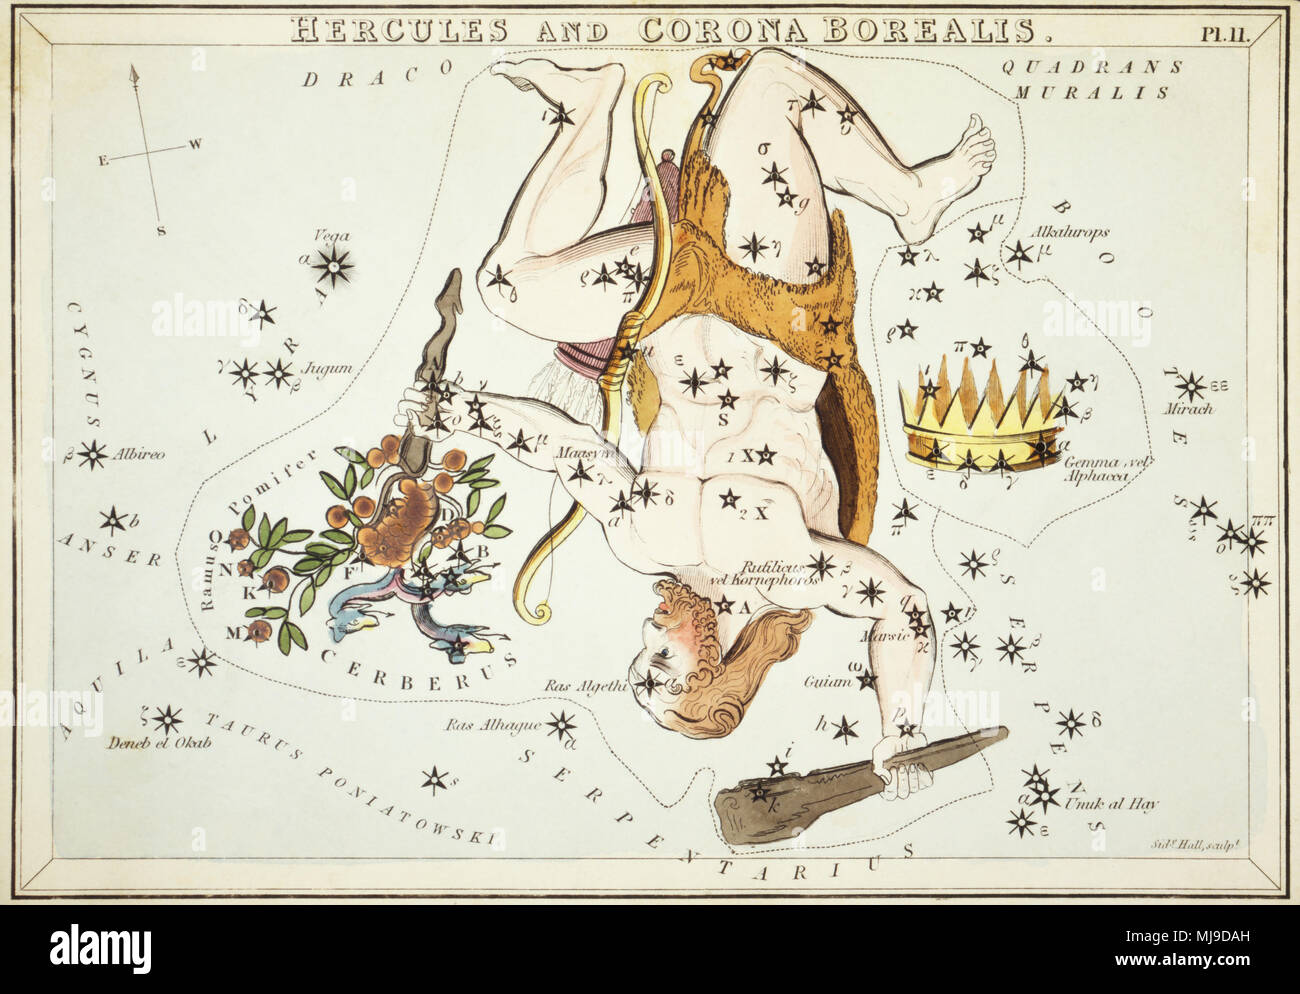 Hercules und Corona Borealis. Karte Nr. 11 von Urania's Mirror, oder einen Blick auf den Himmel, eines der 32 astronomischen Star Chart Karten von Sidney Hall graviert und publshed 1824. Stockfoto